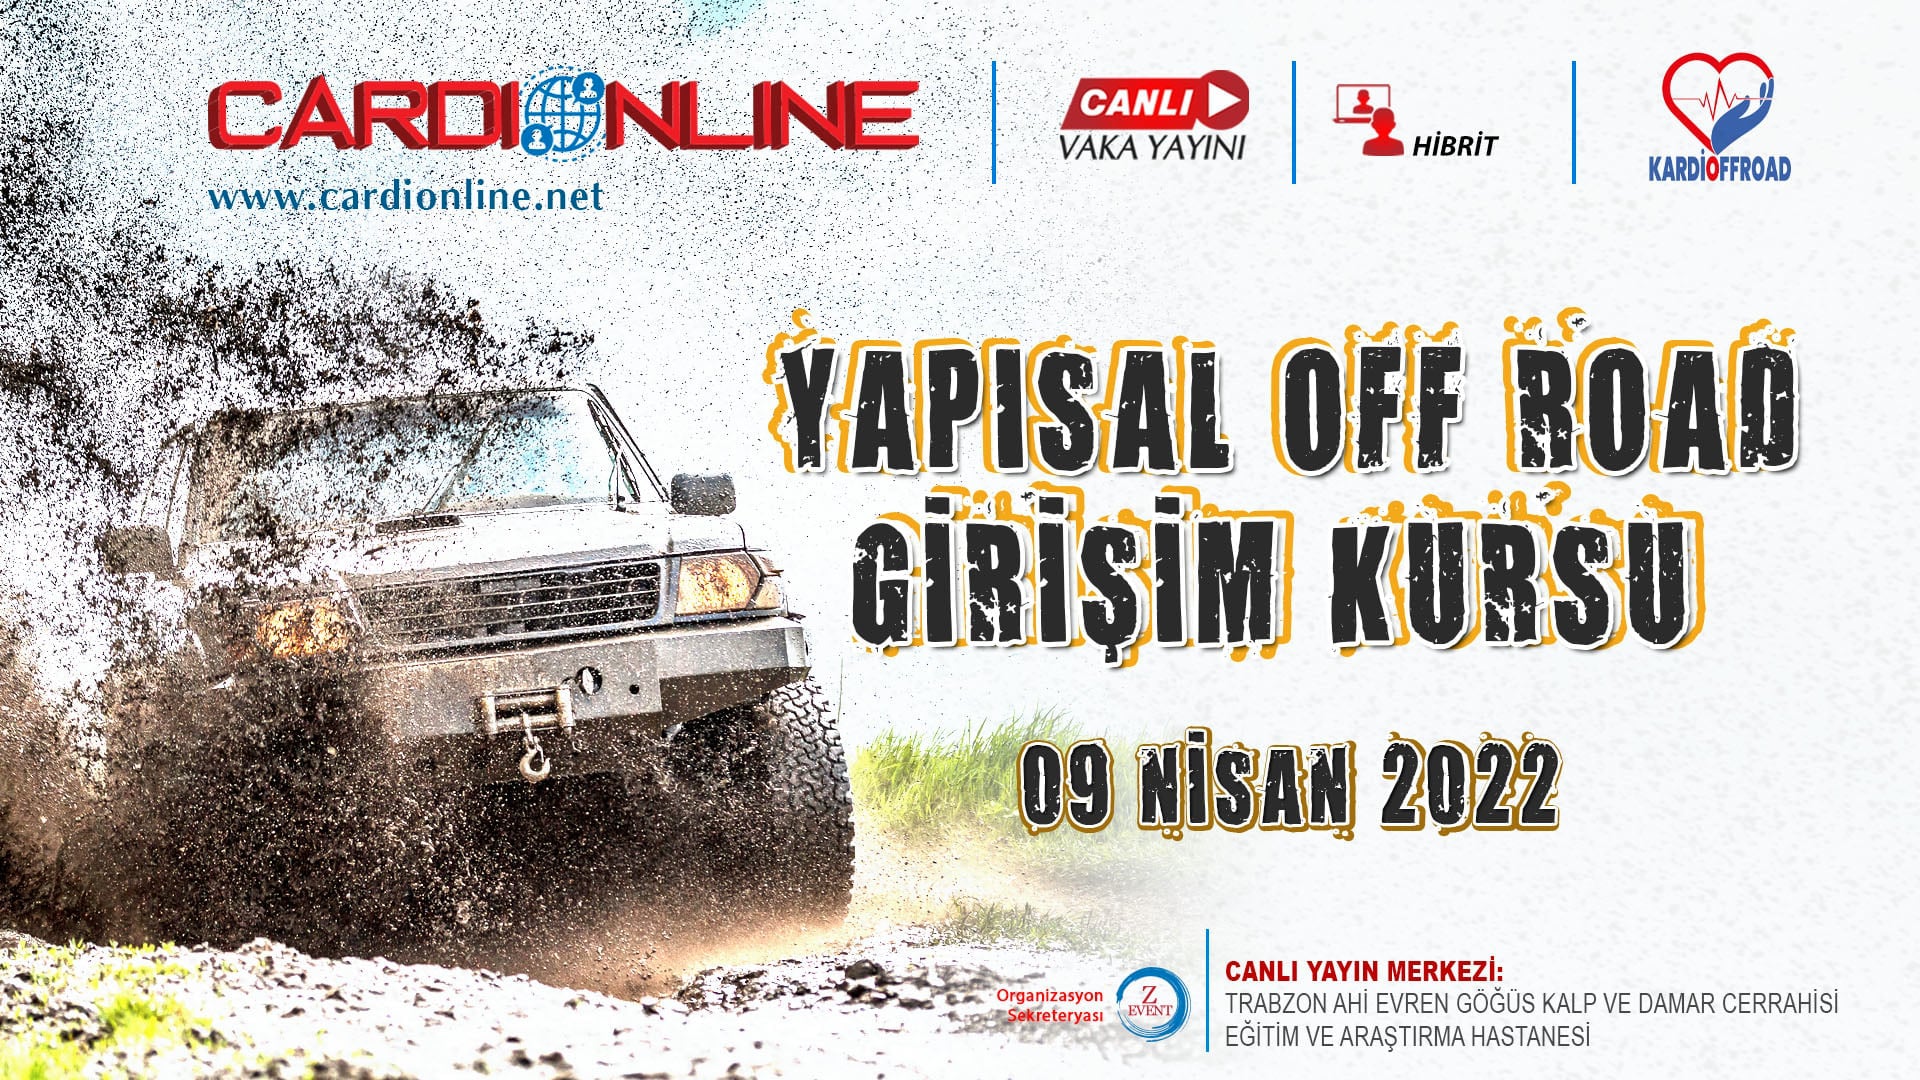 Cardionline Yapısal Off Road Girişim Kursu 9 Nisan 2022, Trabzon